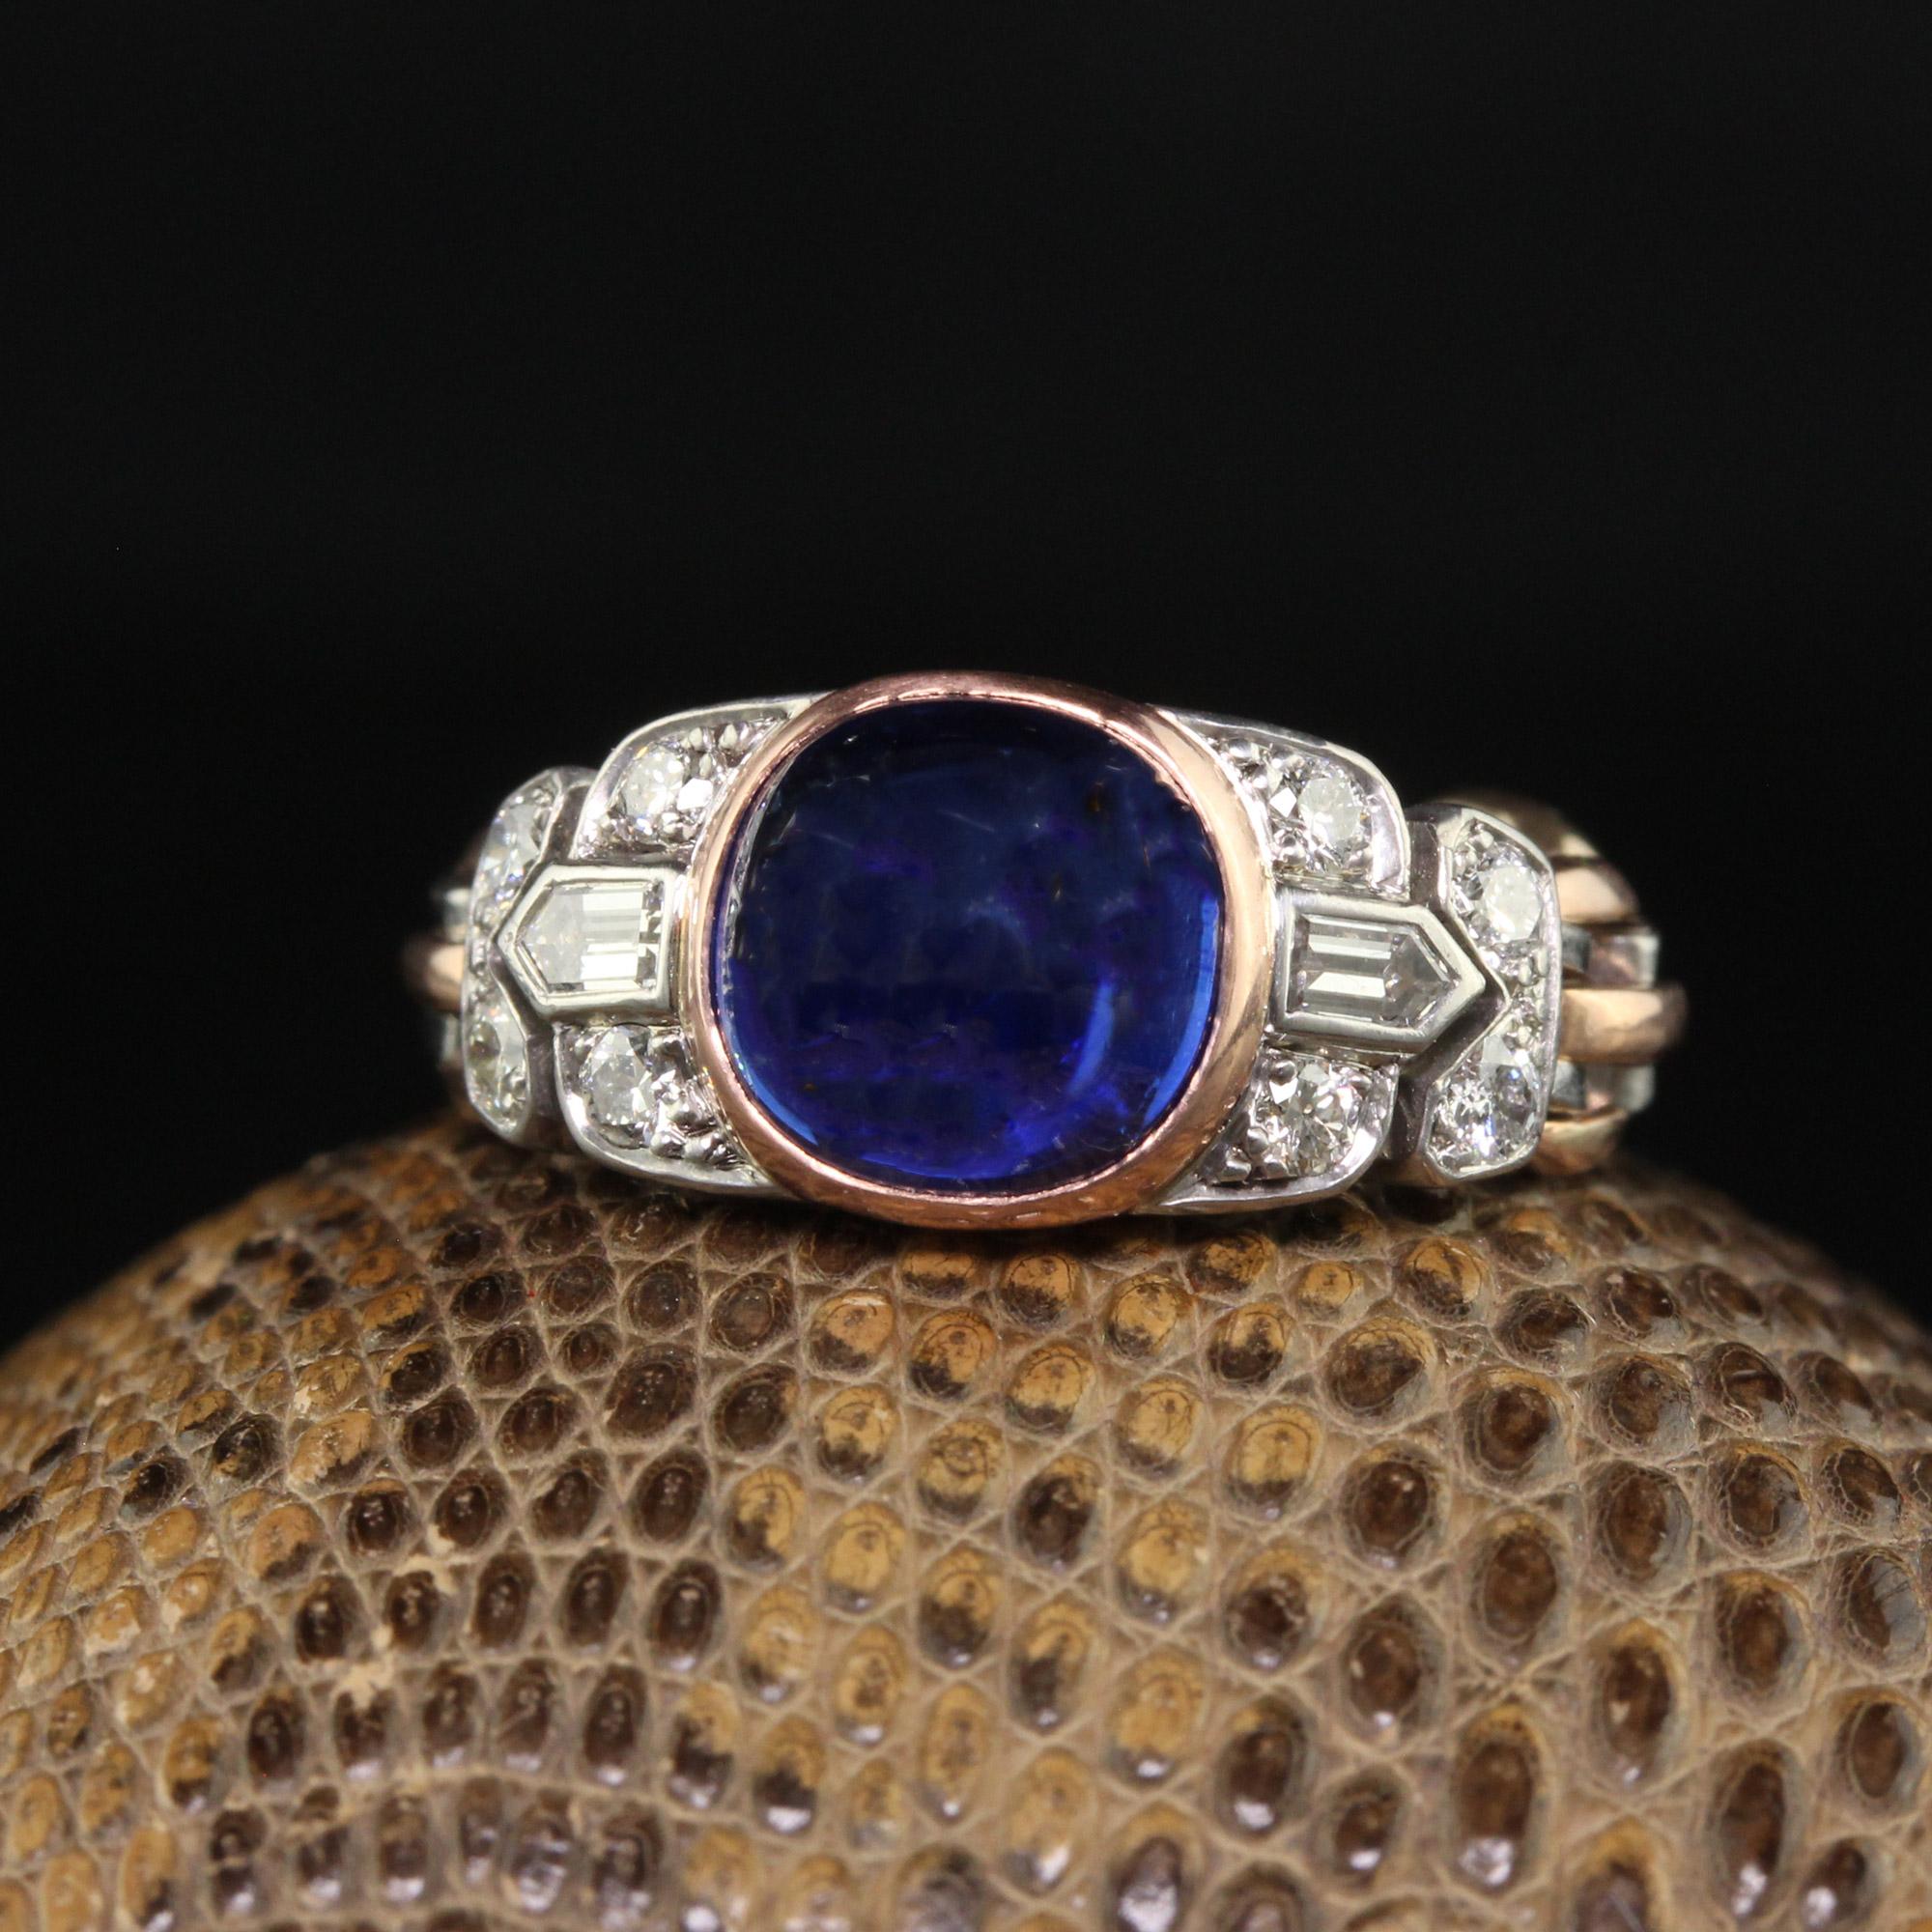 Schöne antike Art Deco 18K Gold Platin Kaschmir Saphir Diamant Flexible Ring - AGL/SSEF/GIA. Dieser prächtige Art-Déco-Ring ist aus 18 Karat Roségold und Platin gefertigt. In der Mitte dieses Rings befindet sich ein natürlicher Zuckerhut-Saphir, für